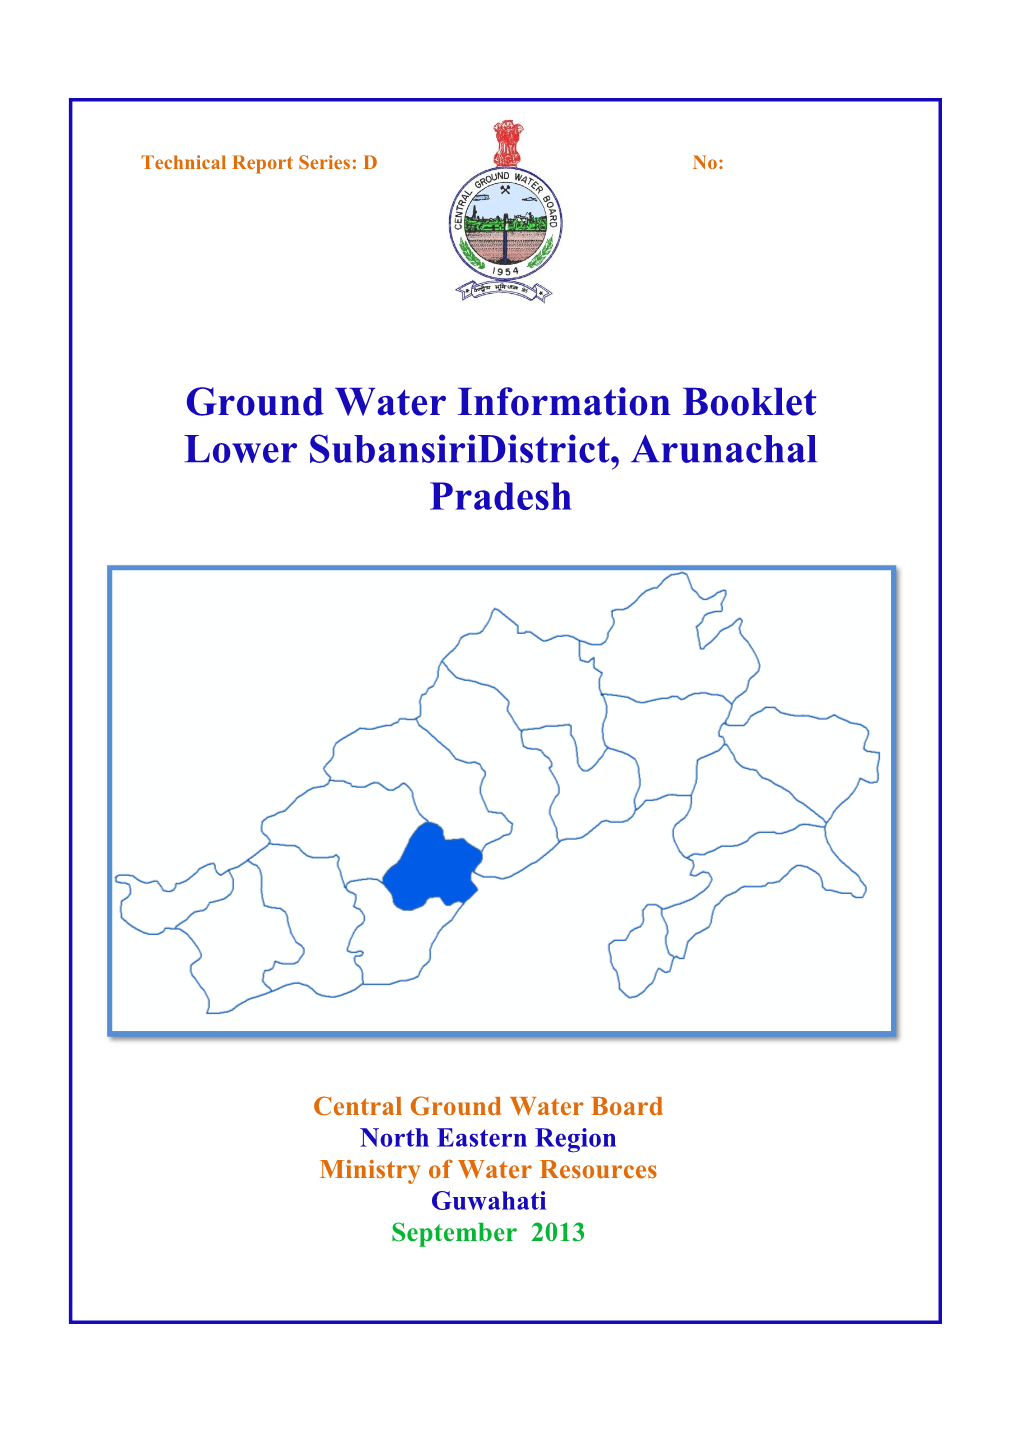 Ground Water Information Booklet Lower Subansiridistrict, Arunachal